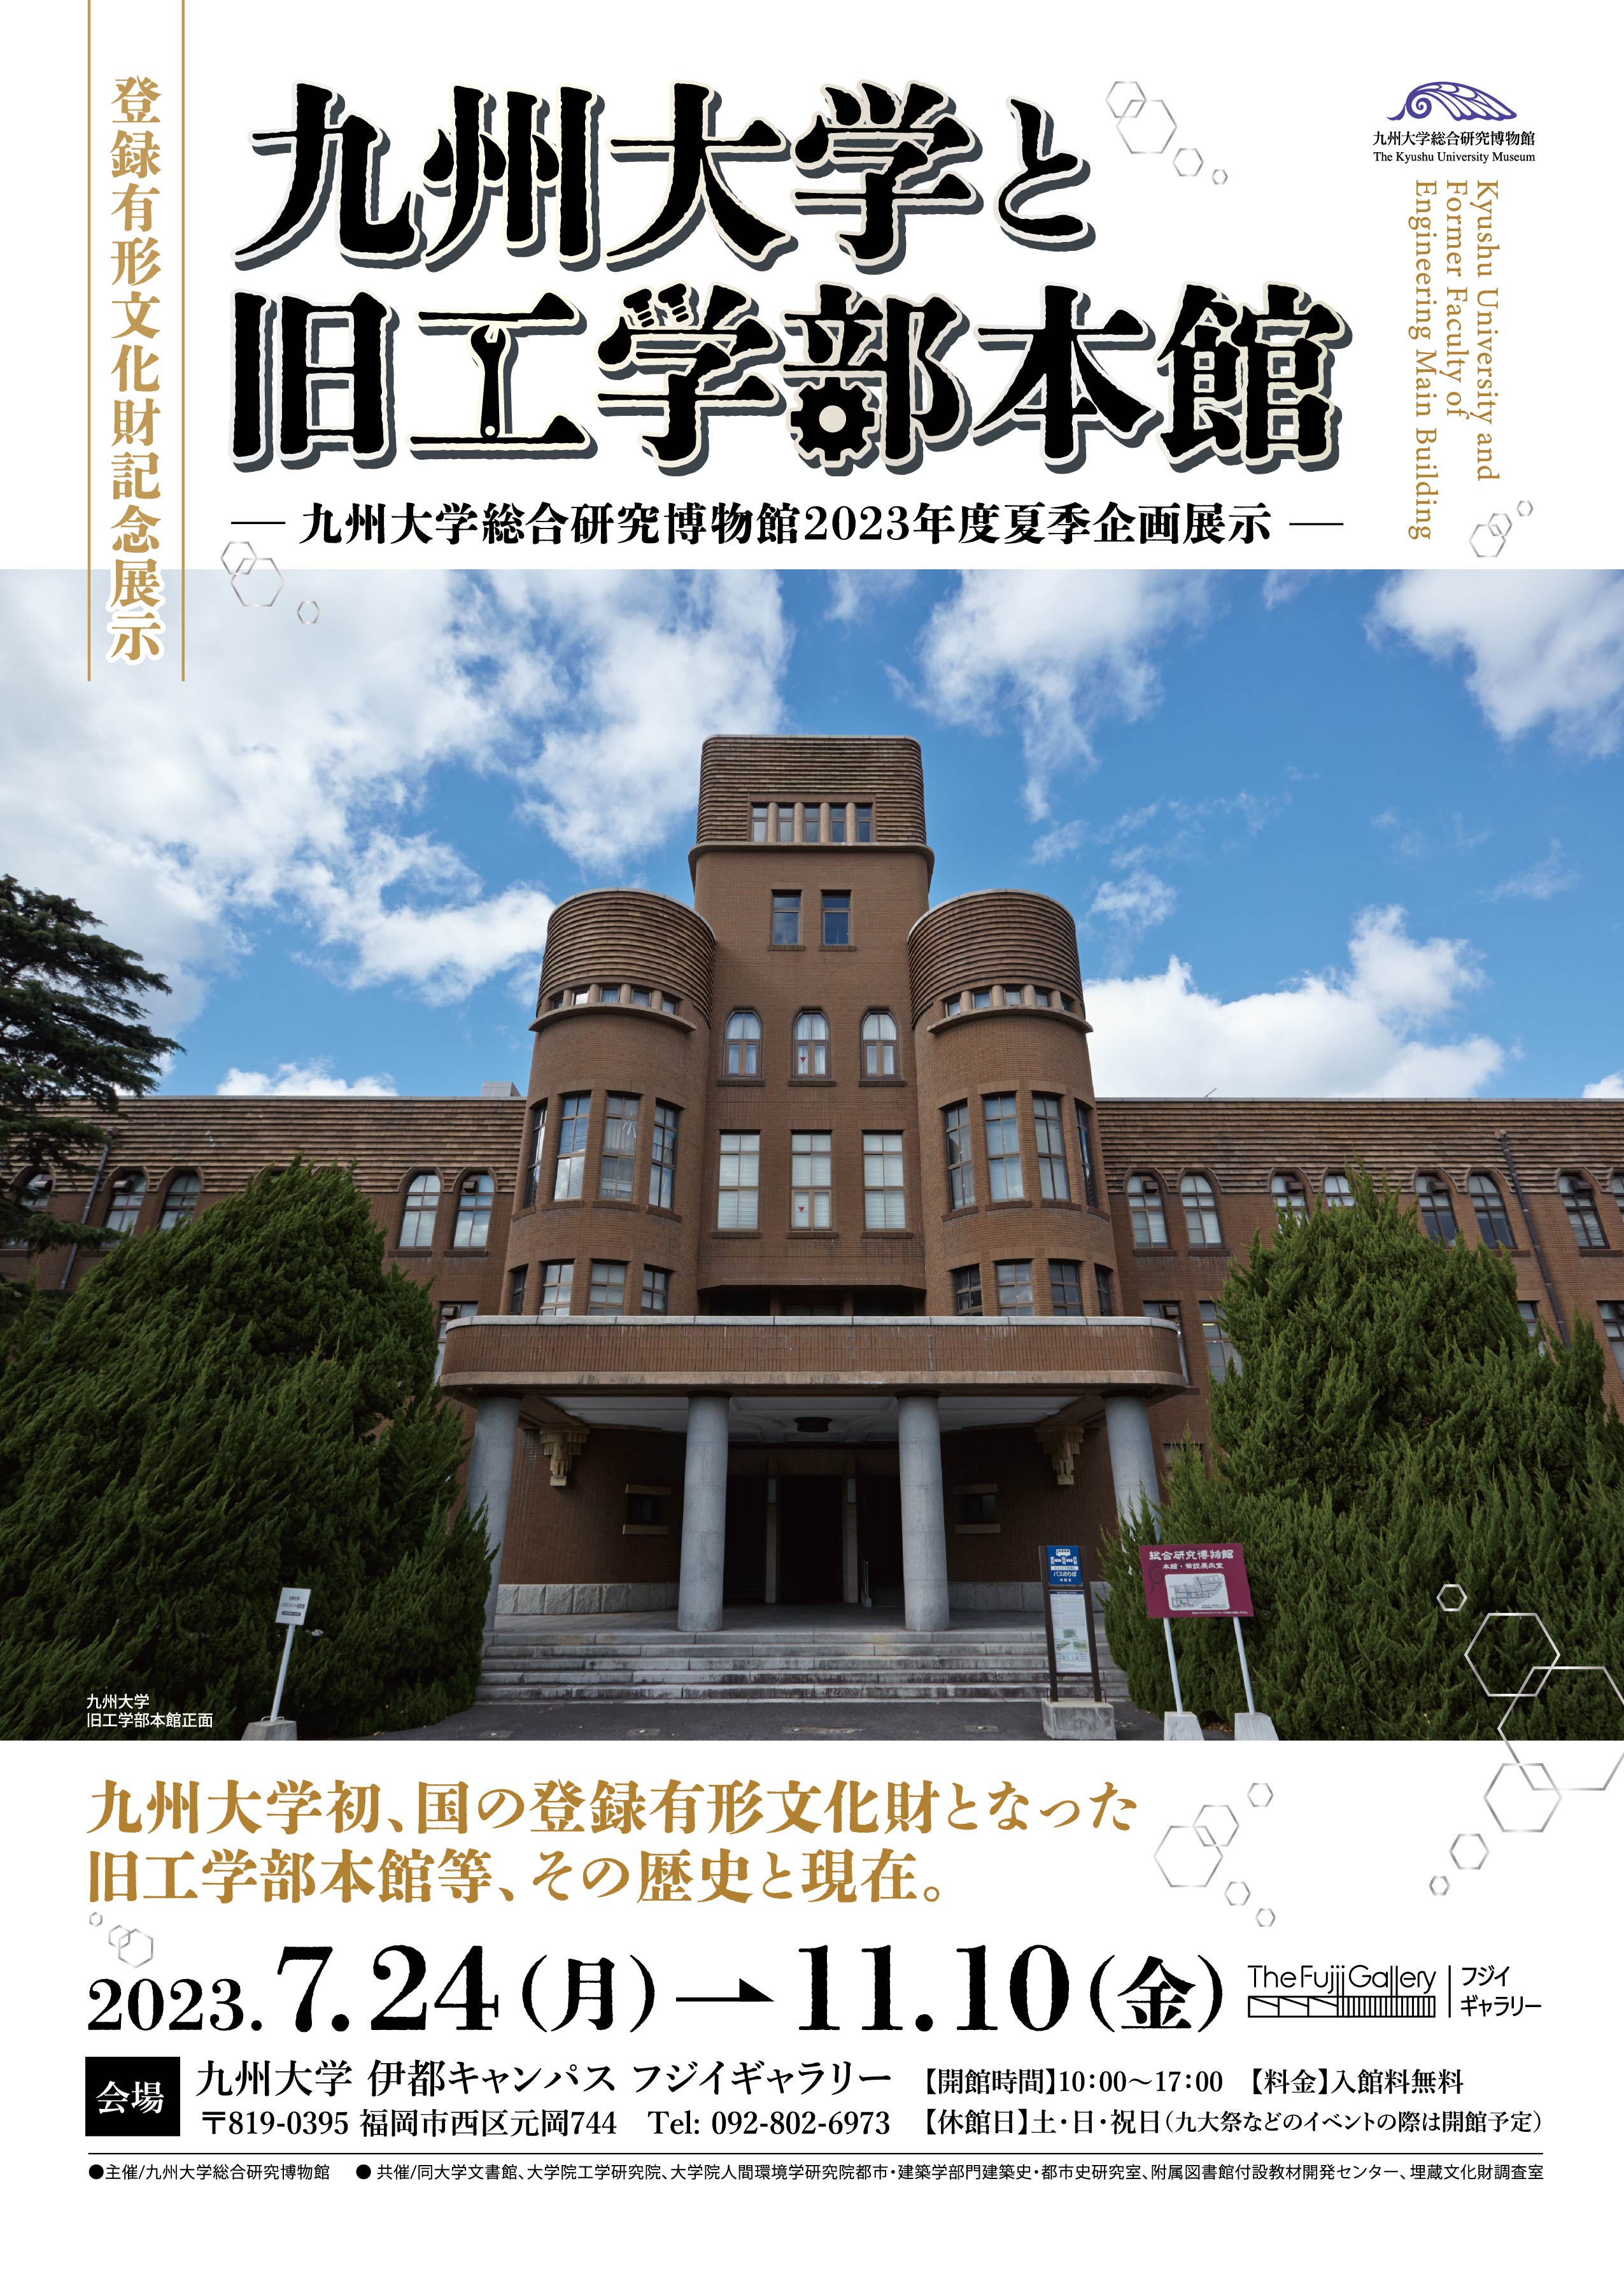 九州大学と旧工学部本館